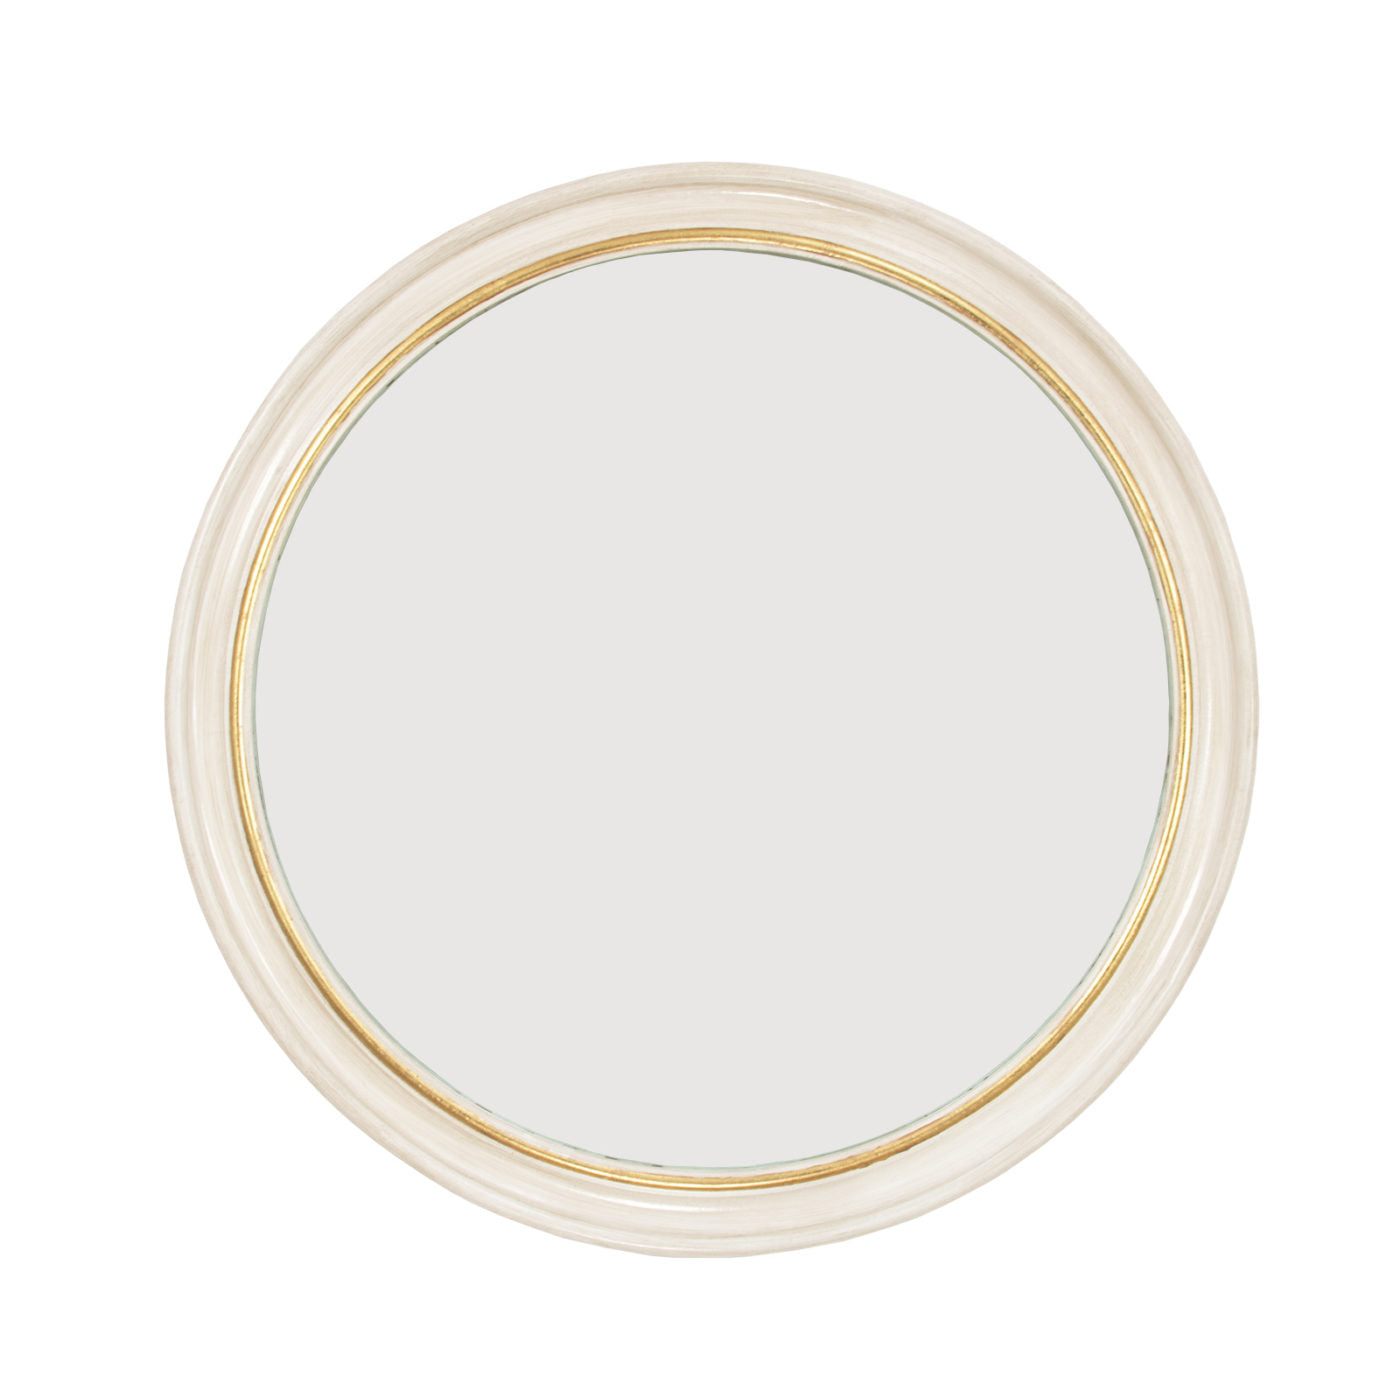 40" White/Gold Round Mirror